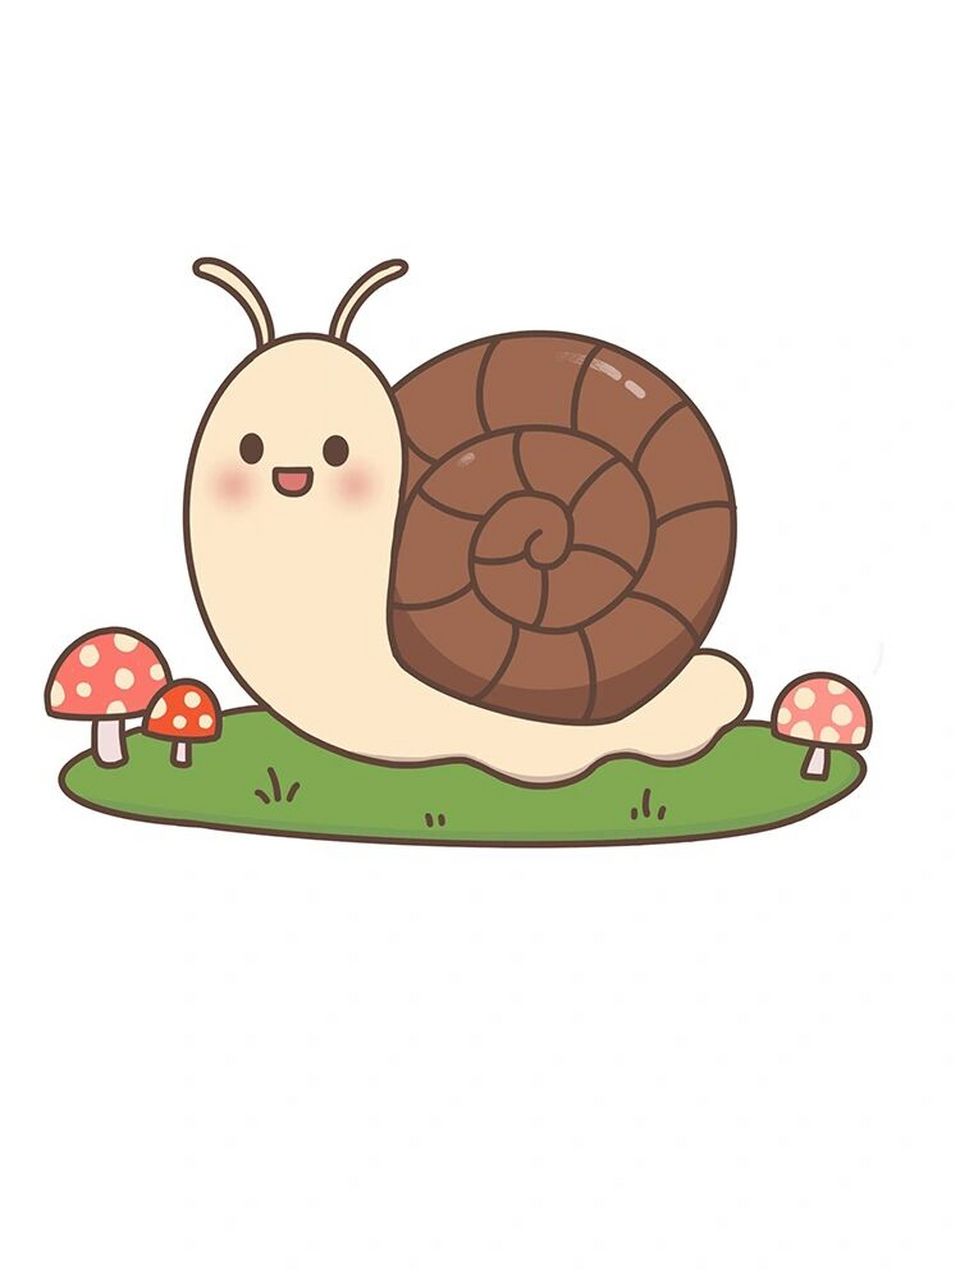 可爱的小蜗牛简笔画 可爱的小蜗牛简笔画!